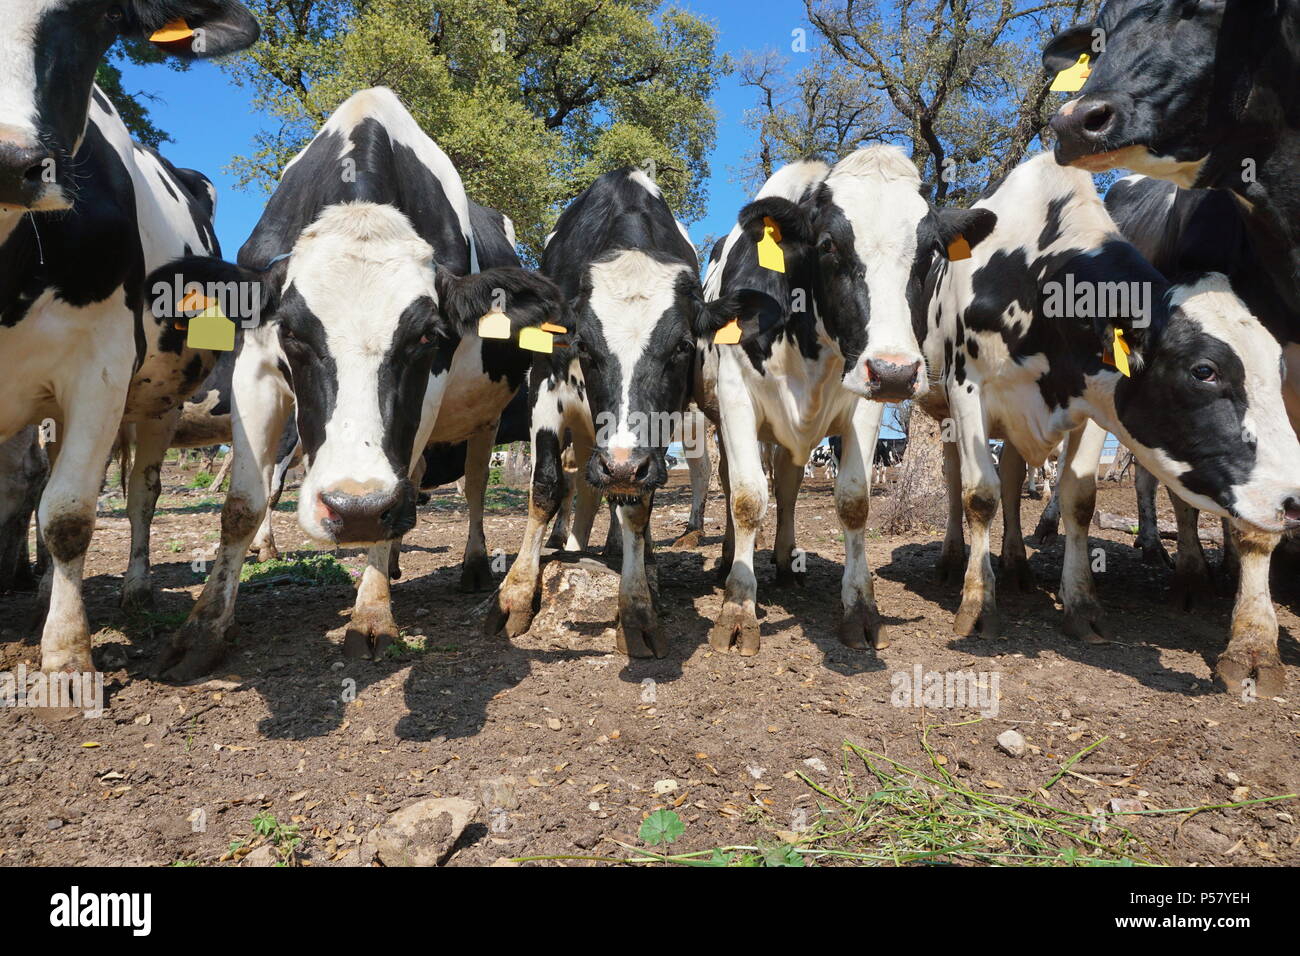 Les bovins laitiers curieux dans un champ, l'Alt Emporda, Gérone, Catalogne, Espagne Banque D'Images